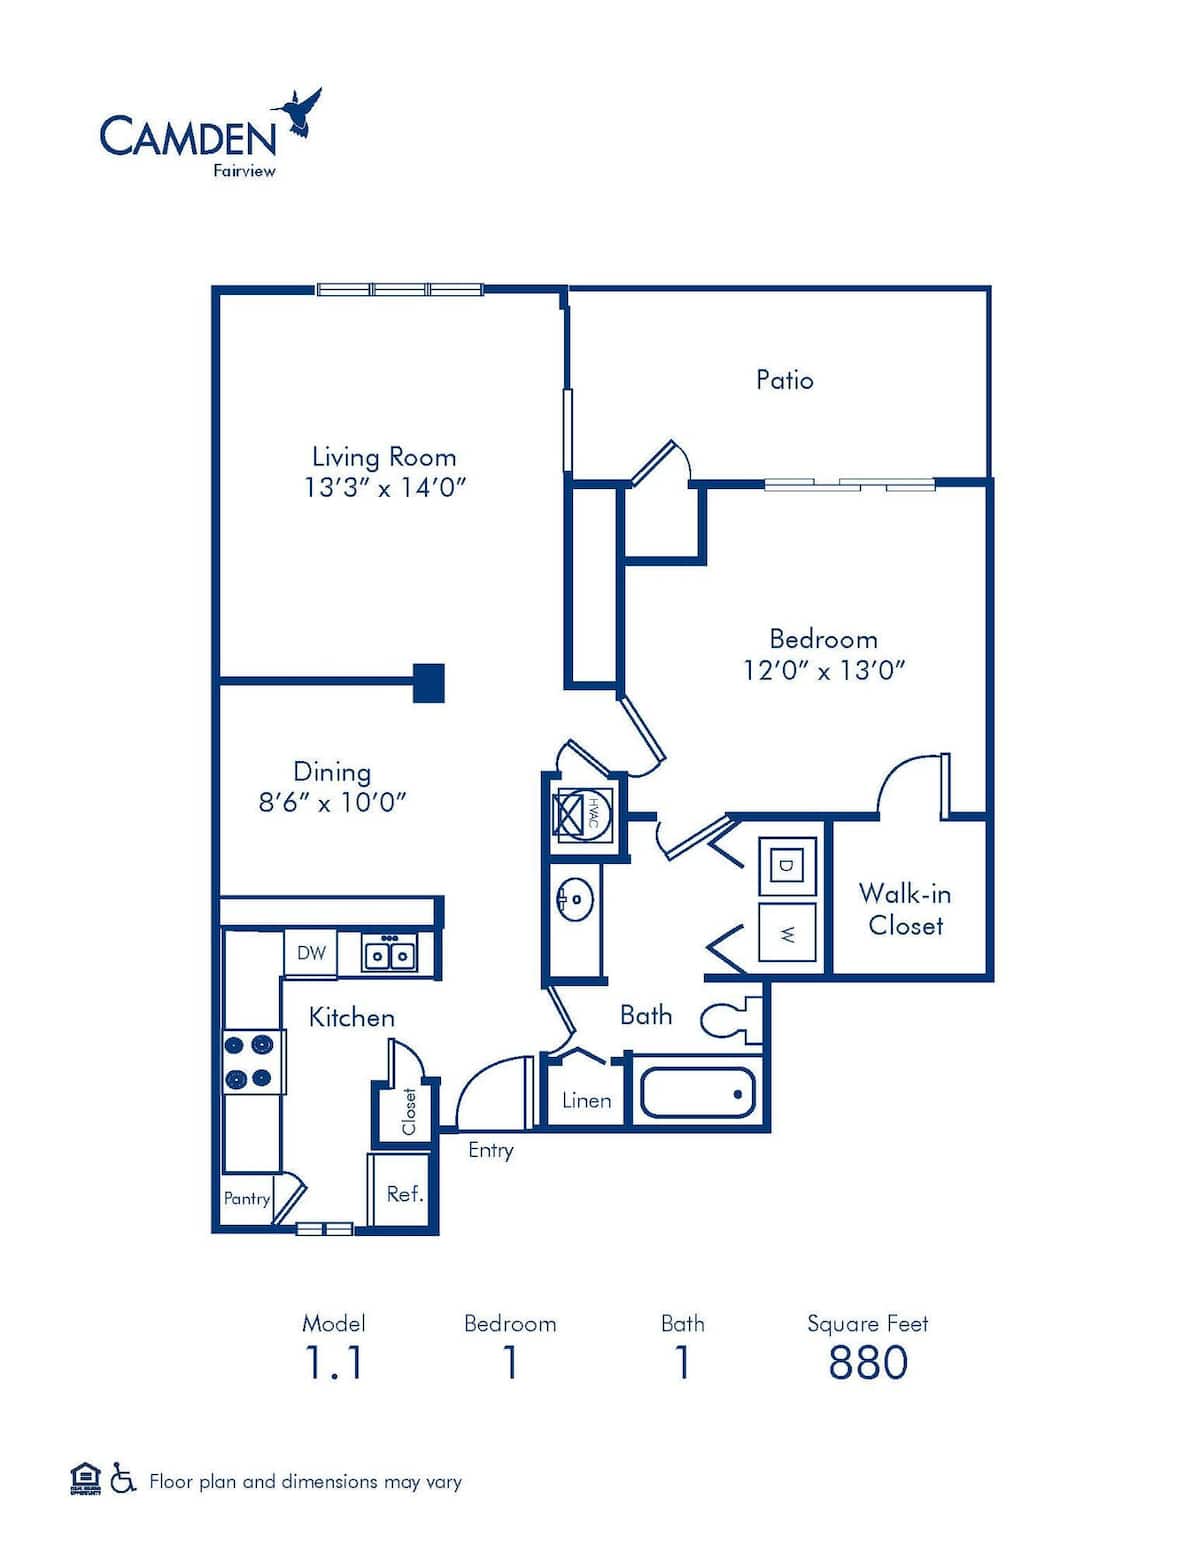 Floorplan diagram for 1.1, showing 1 bedroom